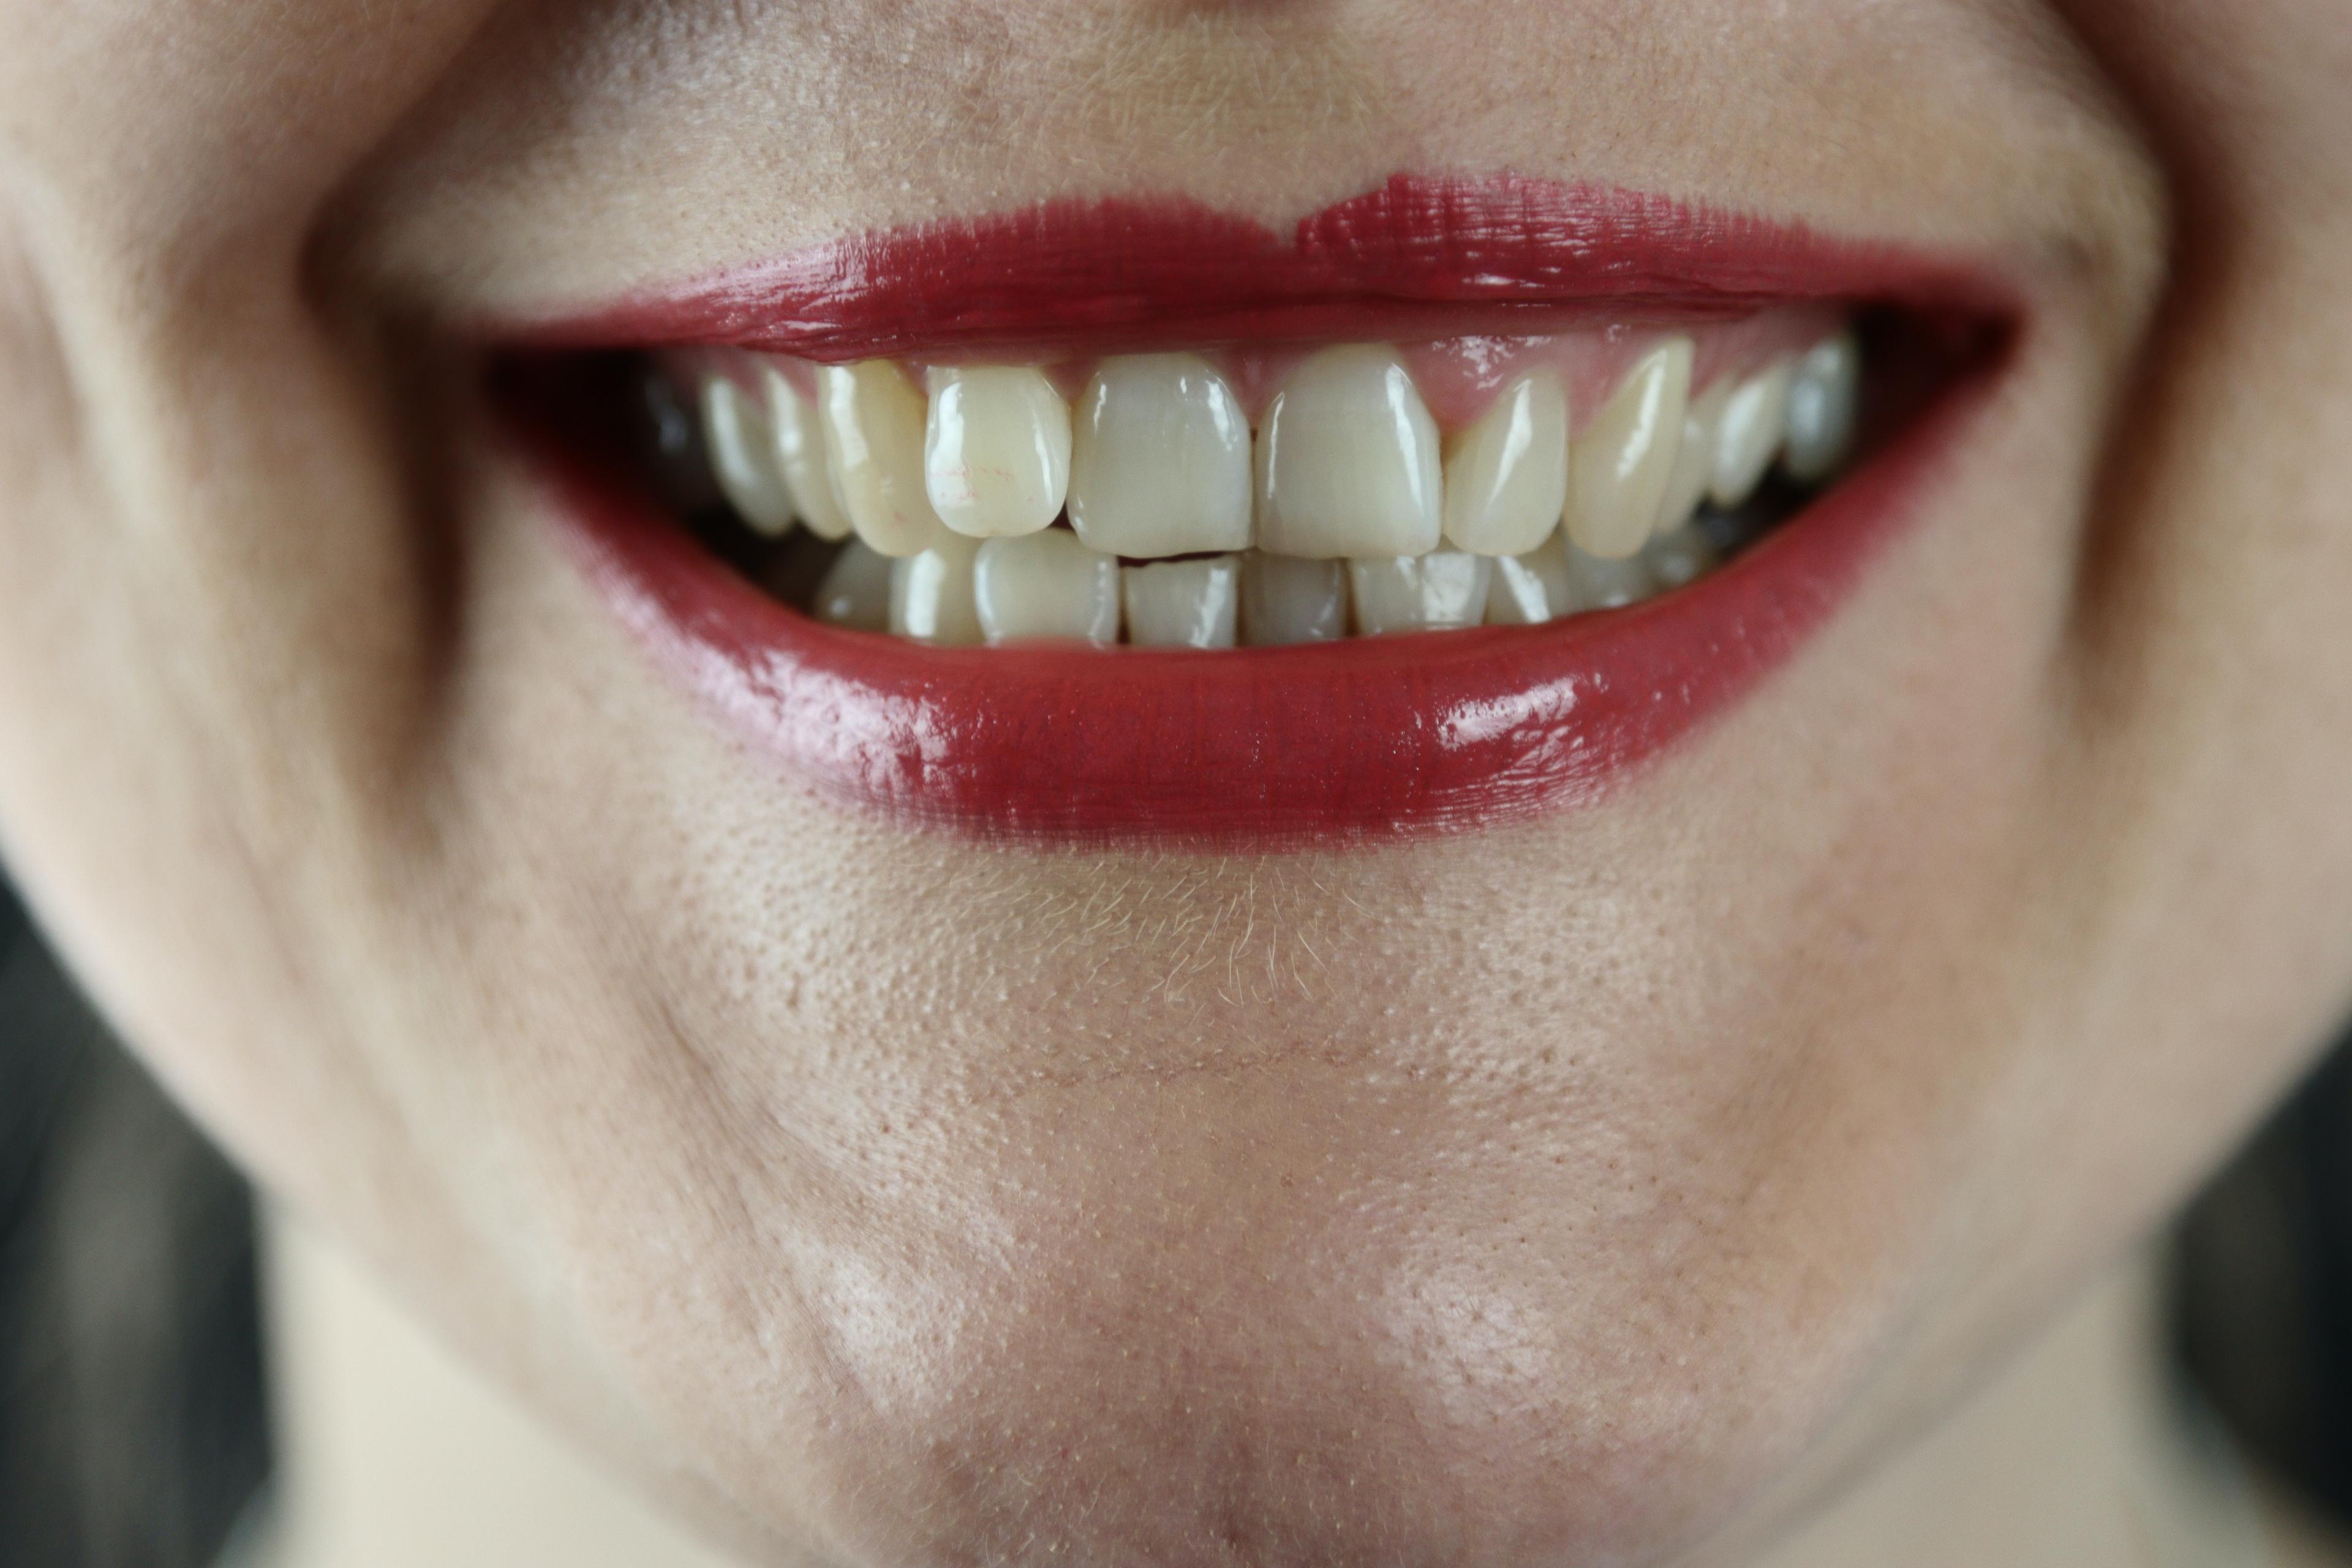 Co na nadwrażliwość zębów? Najlepsze sposoby i leczenie domowe. 4 domowe sposoby na nadwrażliwość zębów. Co pomaga na nadwrażliwe zęby – jakie domowe sposoby?